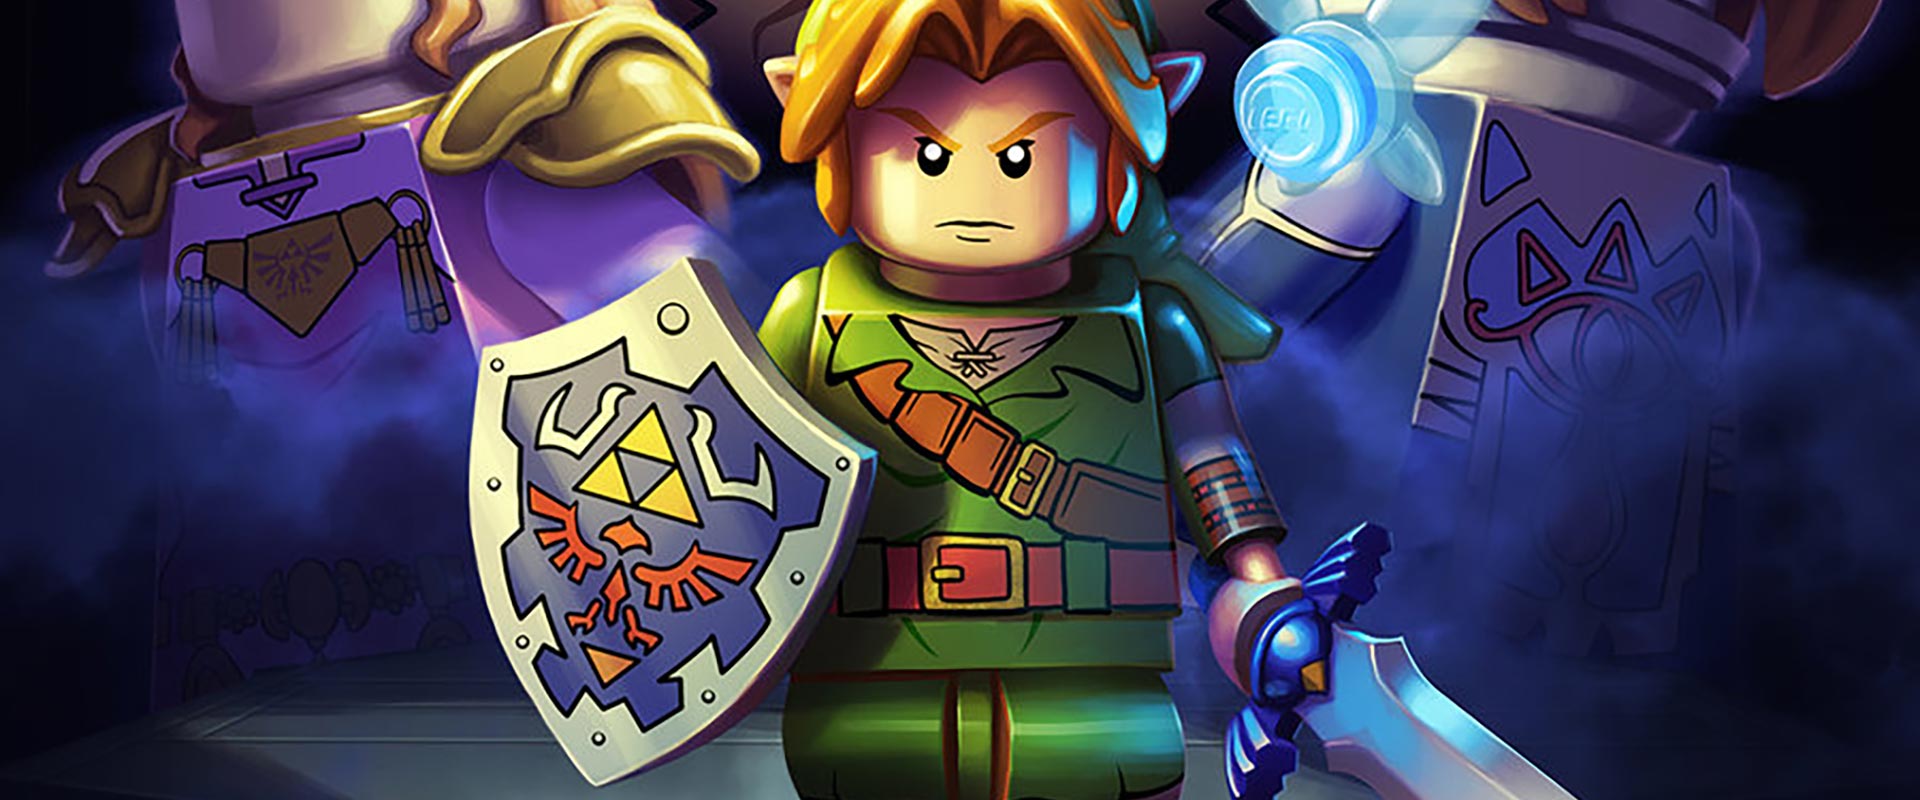 The Lego of Zelda